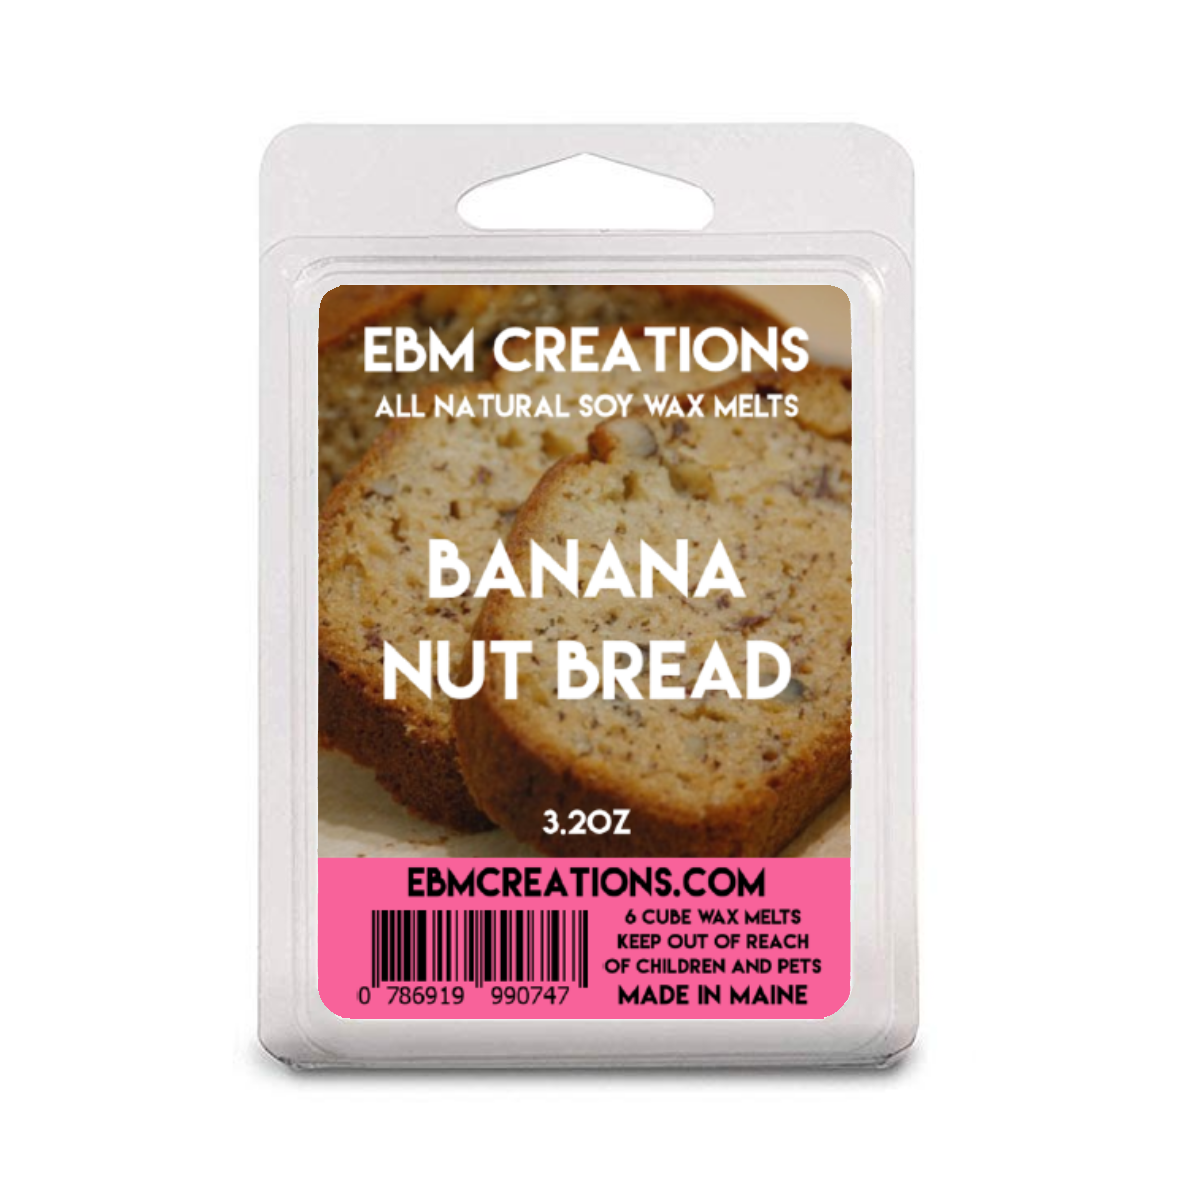 BANANA NUT BREAD - EBM Creations